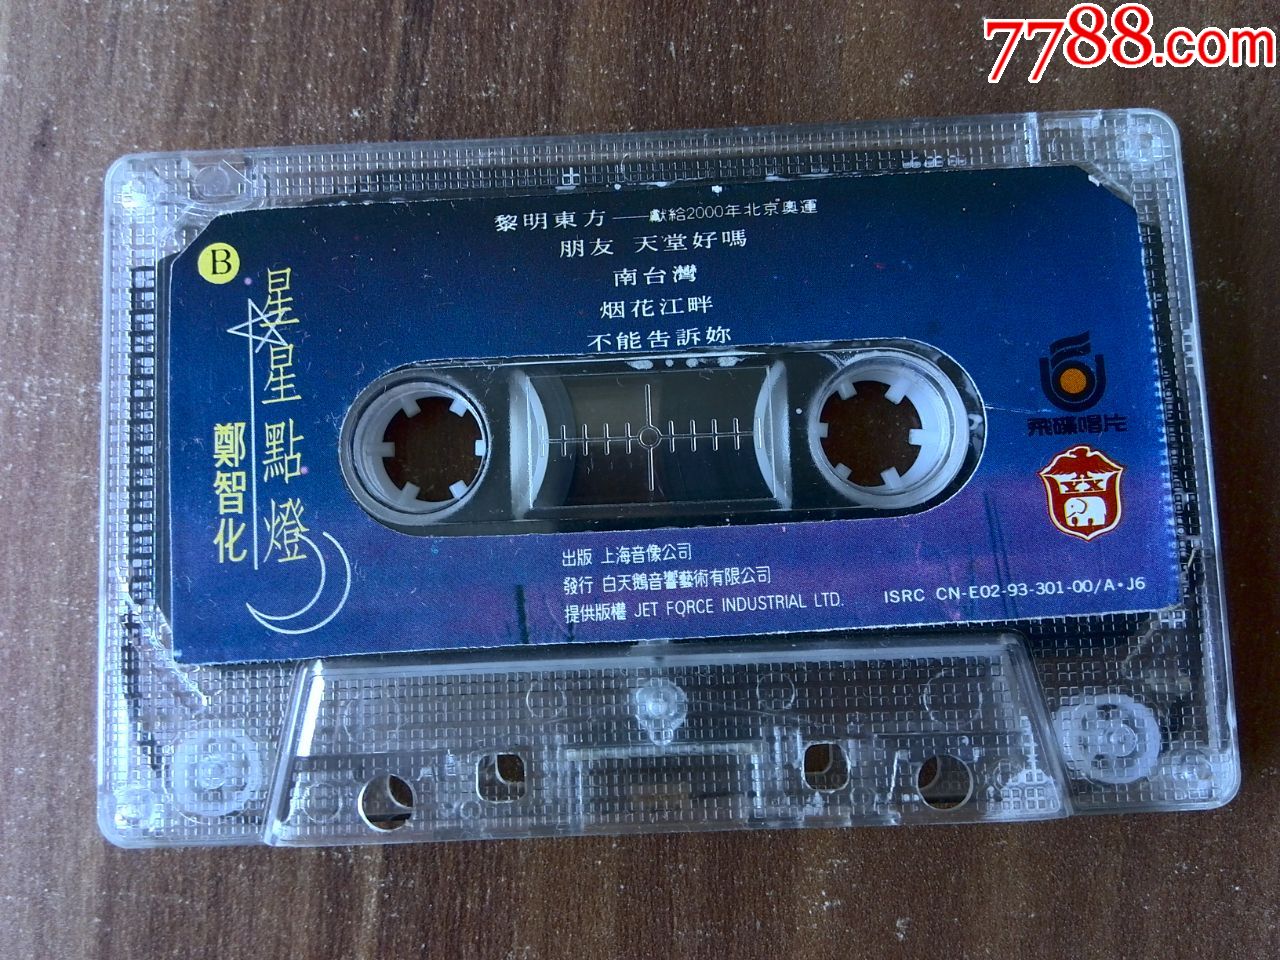 原版引进,郑智化演唱专辑《星星点灯》台湾飞碟唱片提供